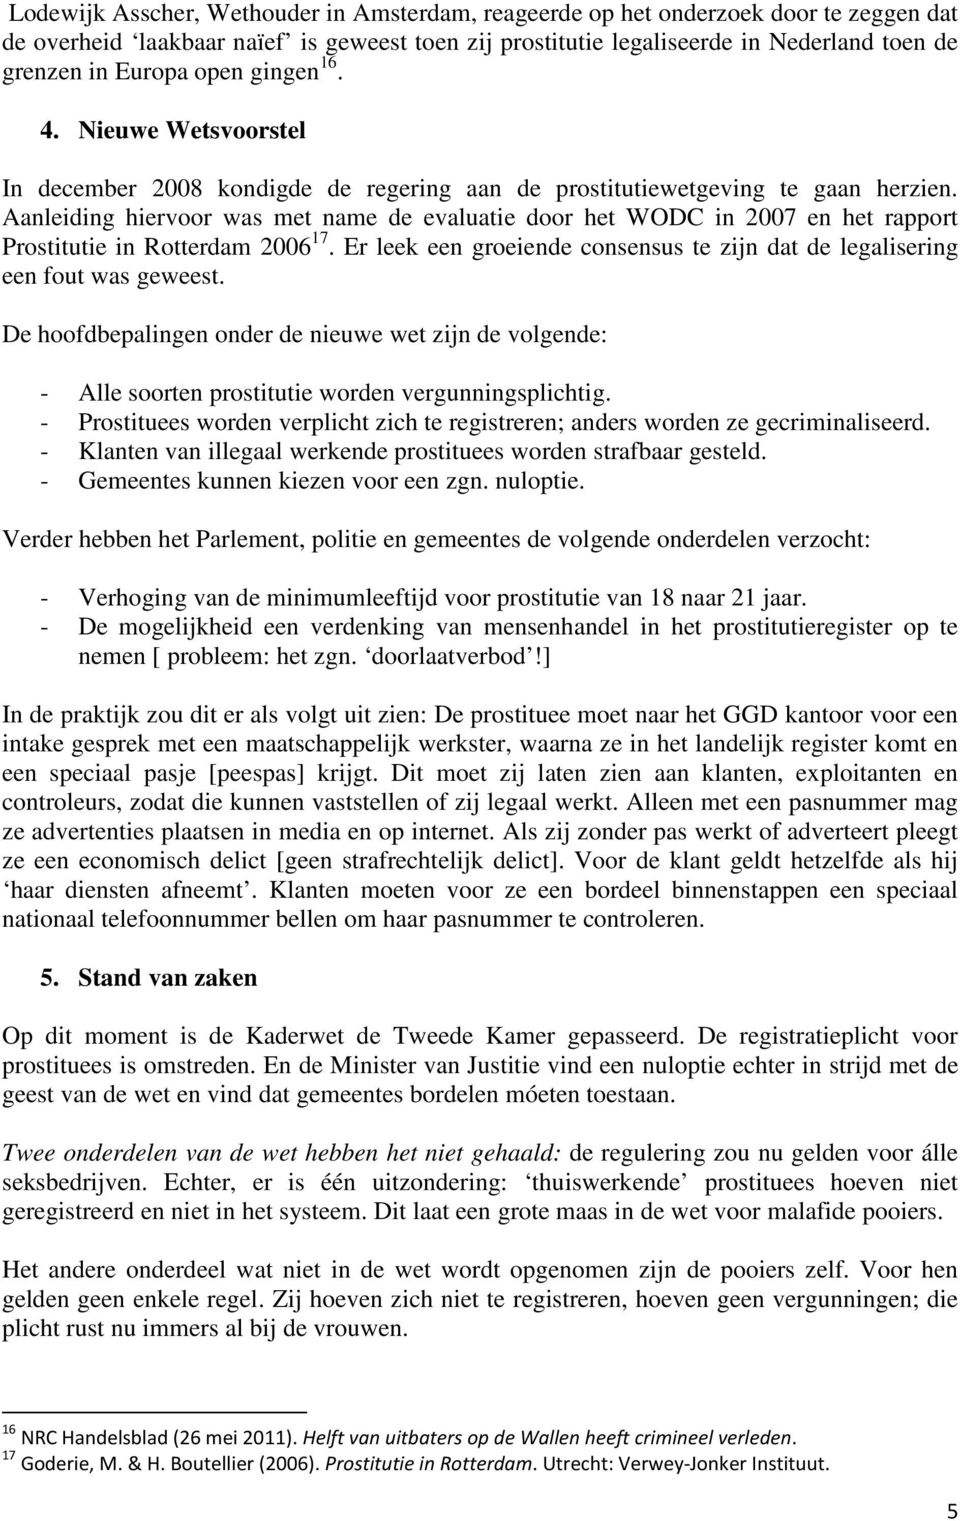 Aanleiding hiervoor was met name de evaluatie door het WODC in 2007 en het rapport Prostitutie in Rotterdam 2006 17. Er leek een groeiende consensus te zijn dat de legalisering een fout was geweest.